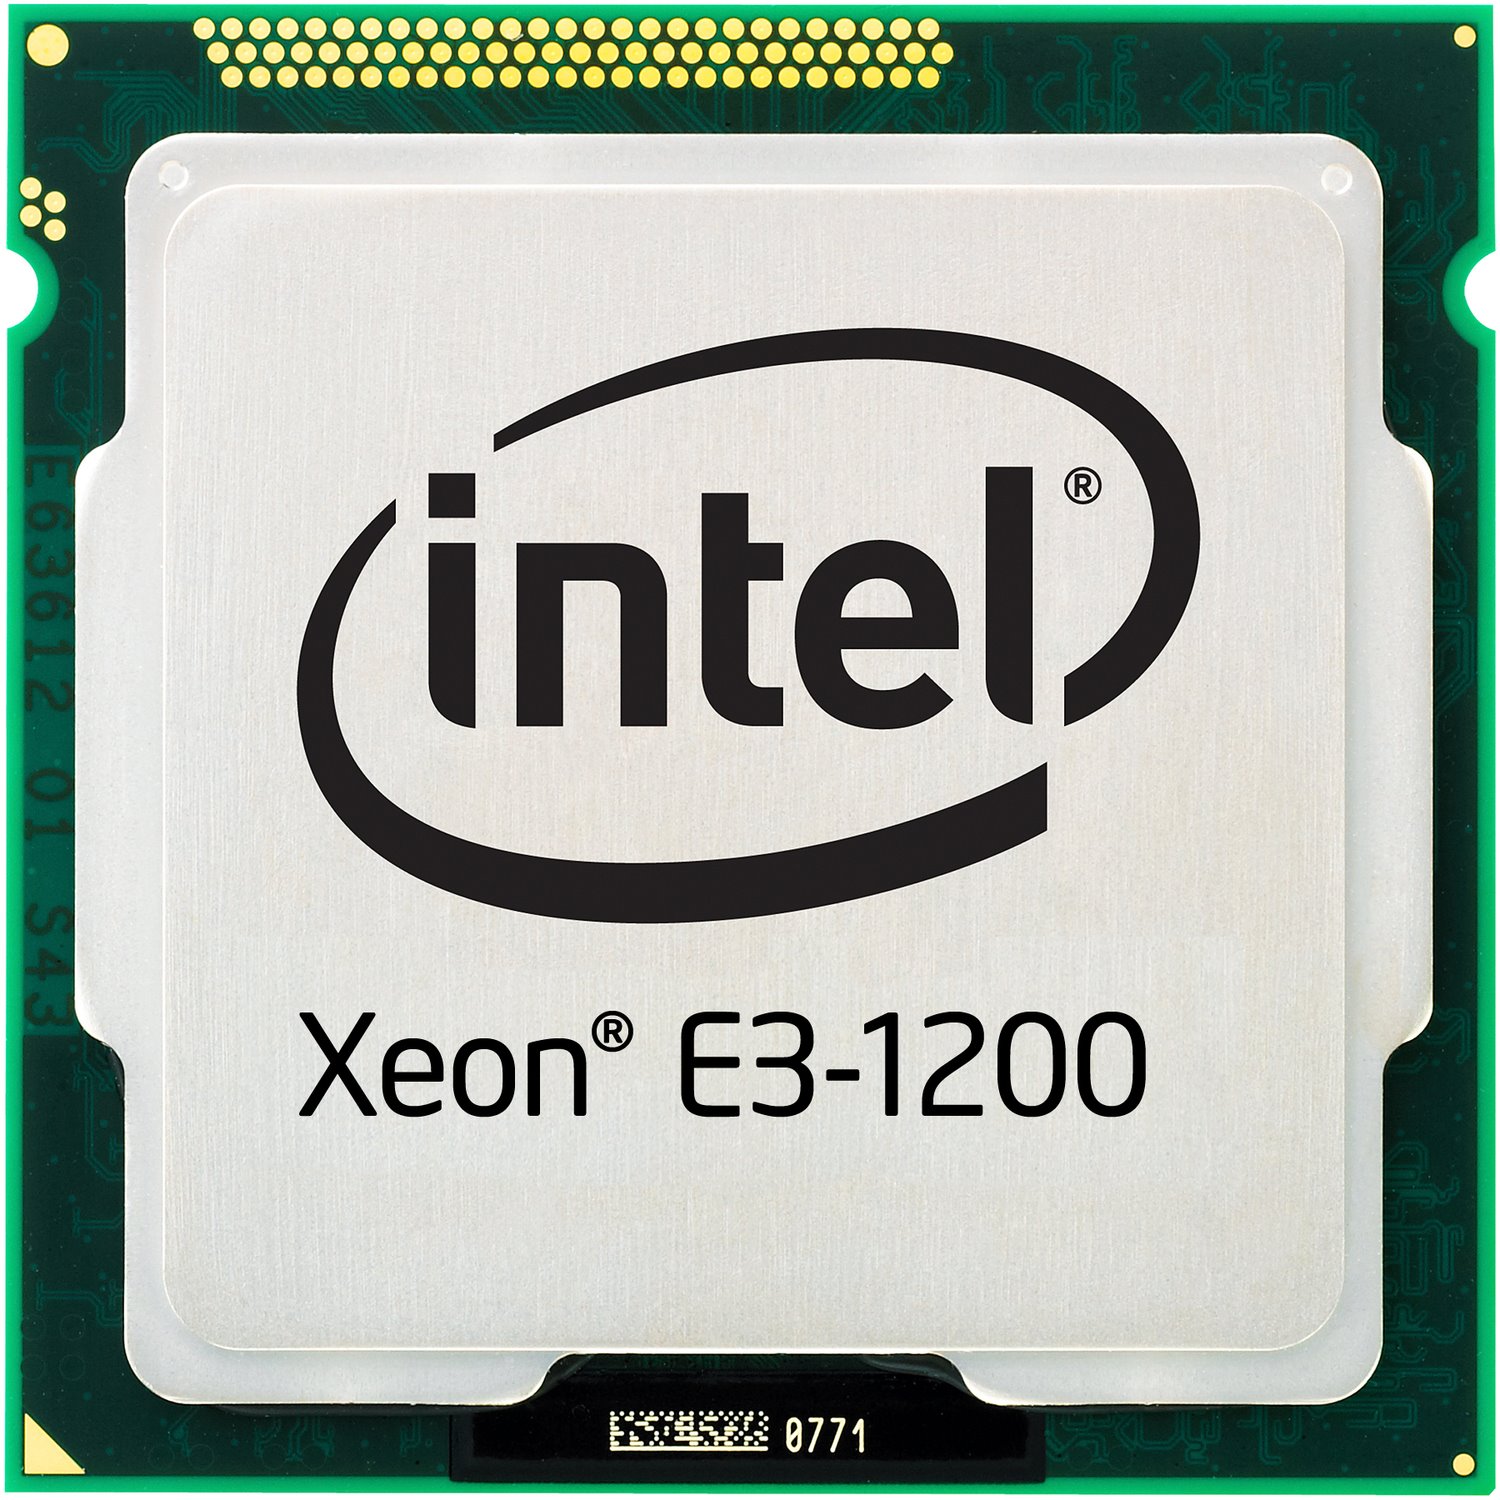 Intel Xeon E3-1200 E3-1275V2 Quad-core (4 Core) 3.50 GHz Processor - OEM Pack